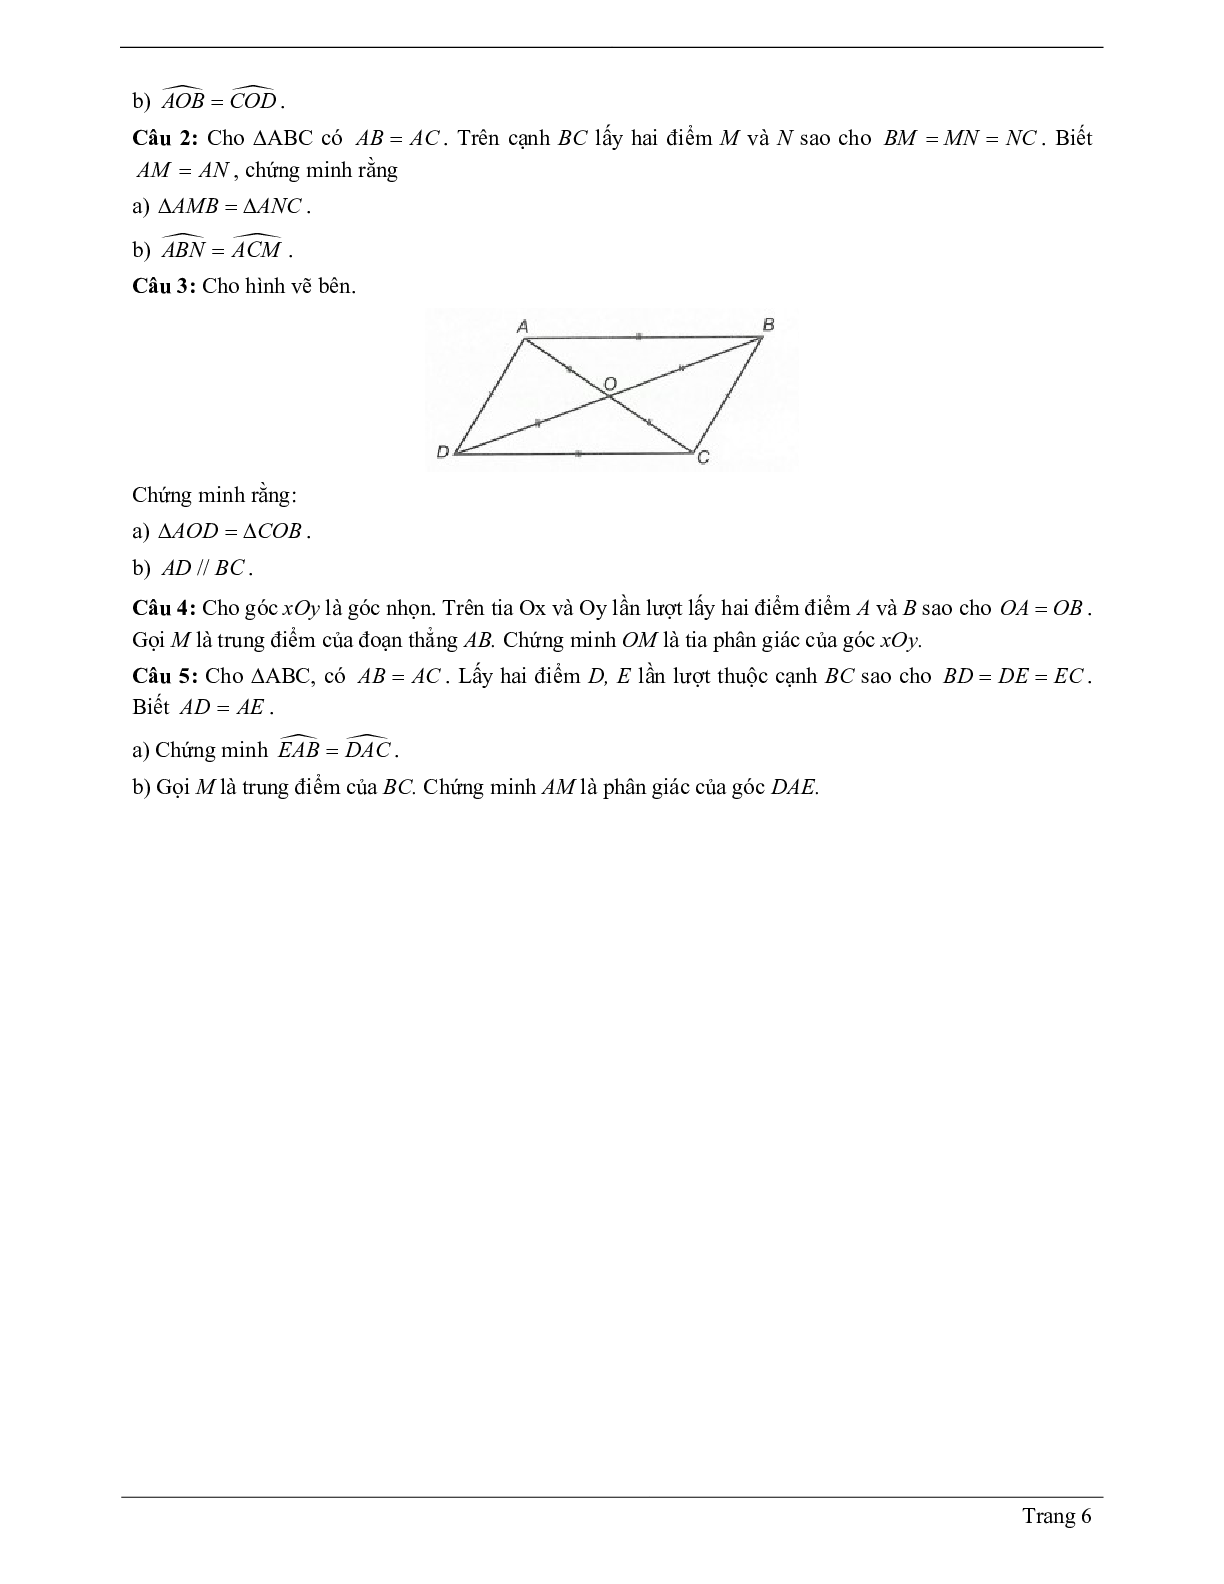 Lý thuyết Toán 7 có đáp án: Trường hợp bằng nhau thứ nhất của tam giác: cạnh - cạnh - canh (c.c.c) (trang 6)